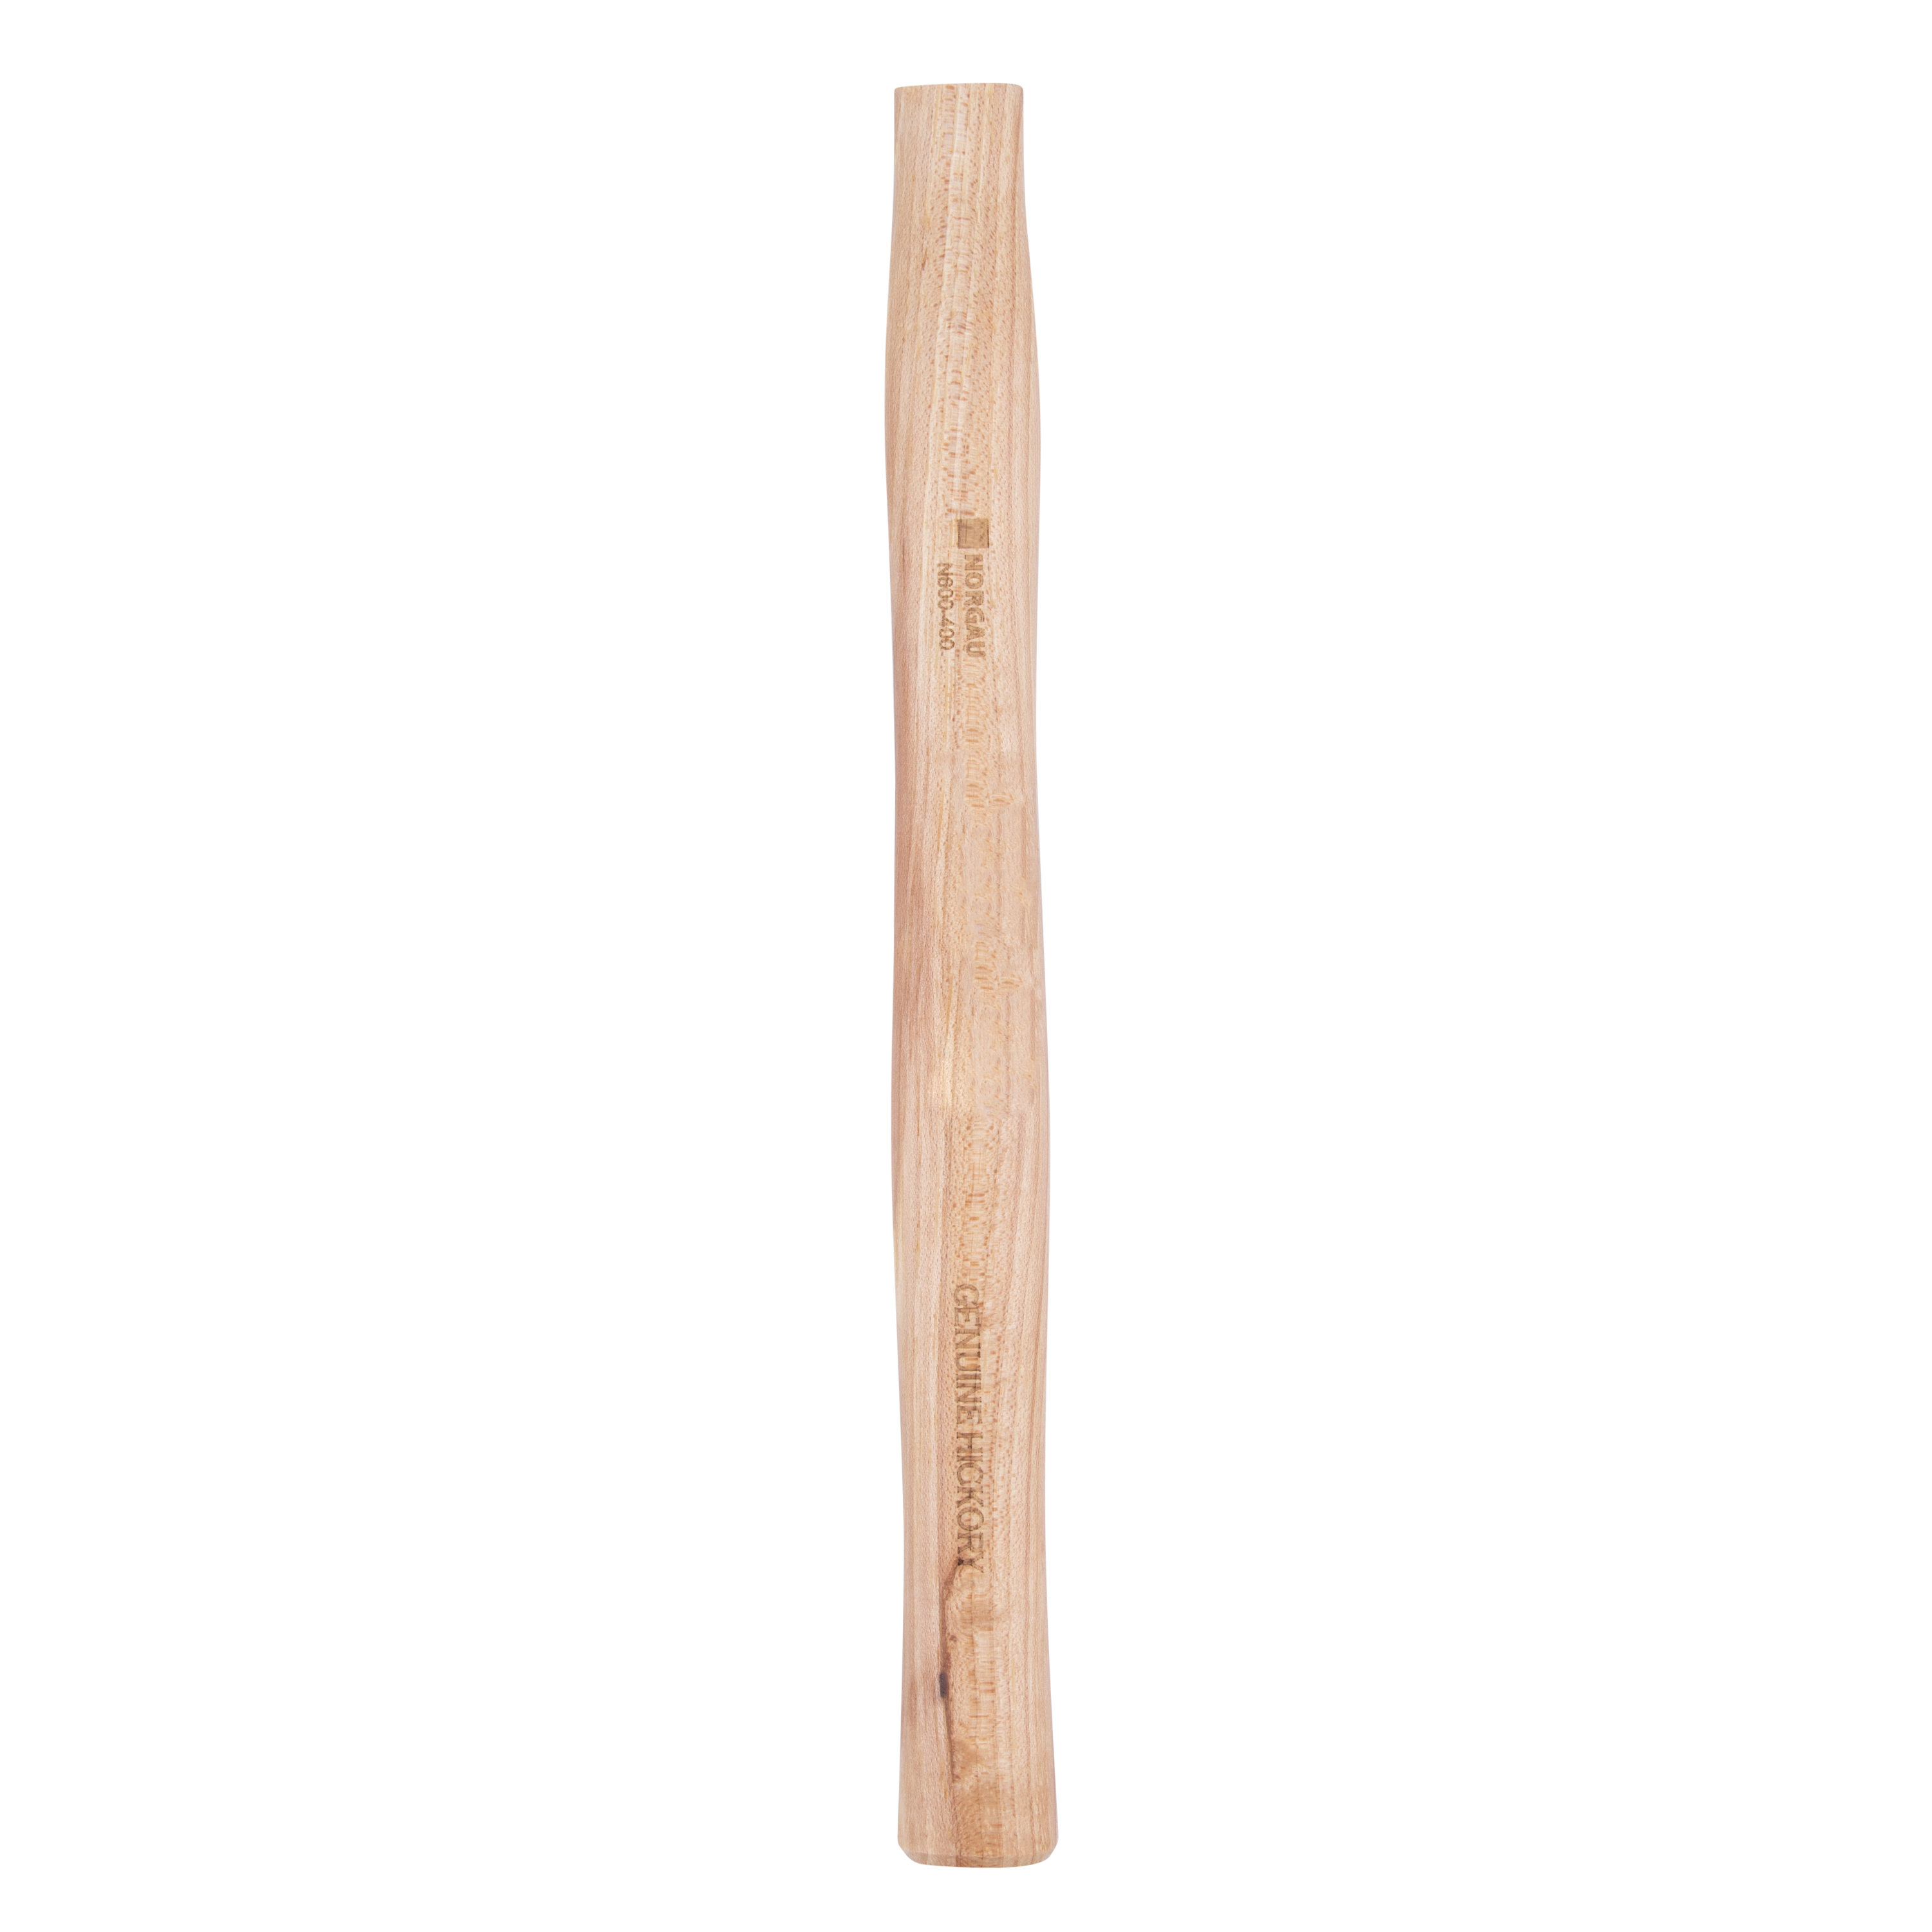 Рукоятка NORGAU Industrial запаснаядля молотка 400 г, из древесины гикори, 300 мм рукоятка для молотка 400 мм из березы шлифованная